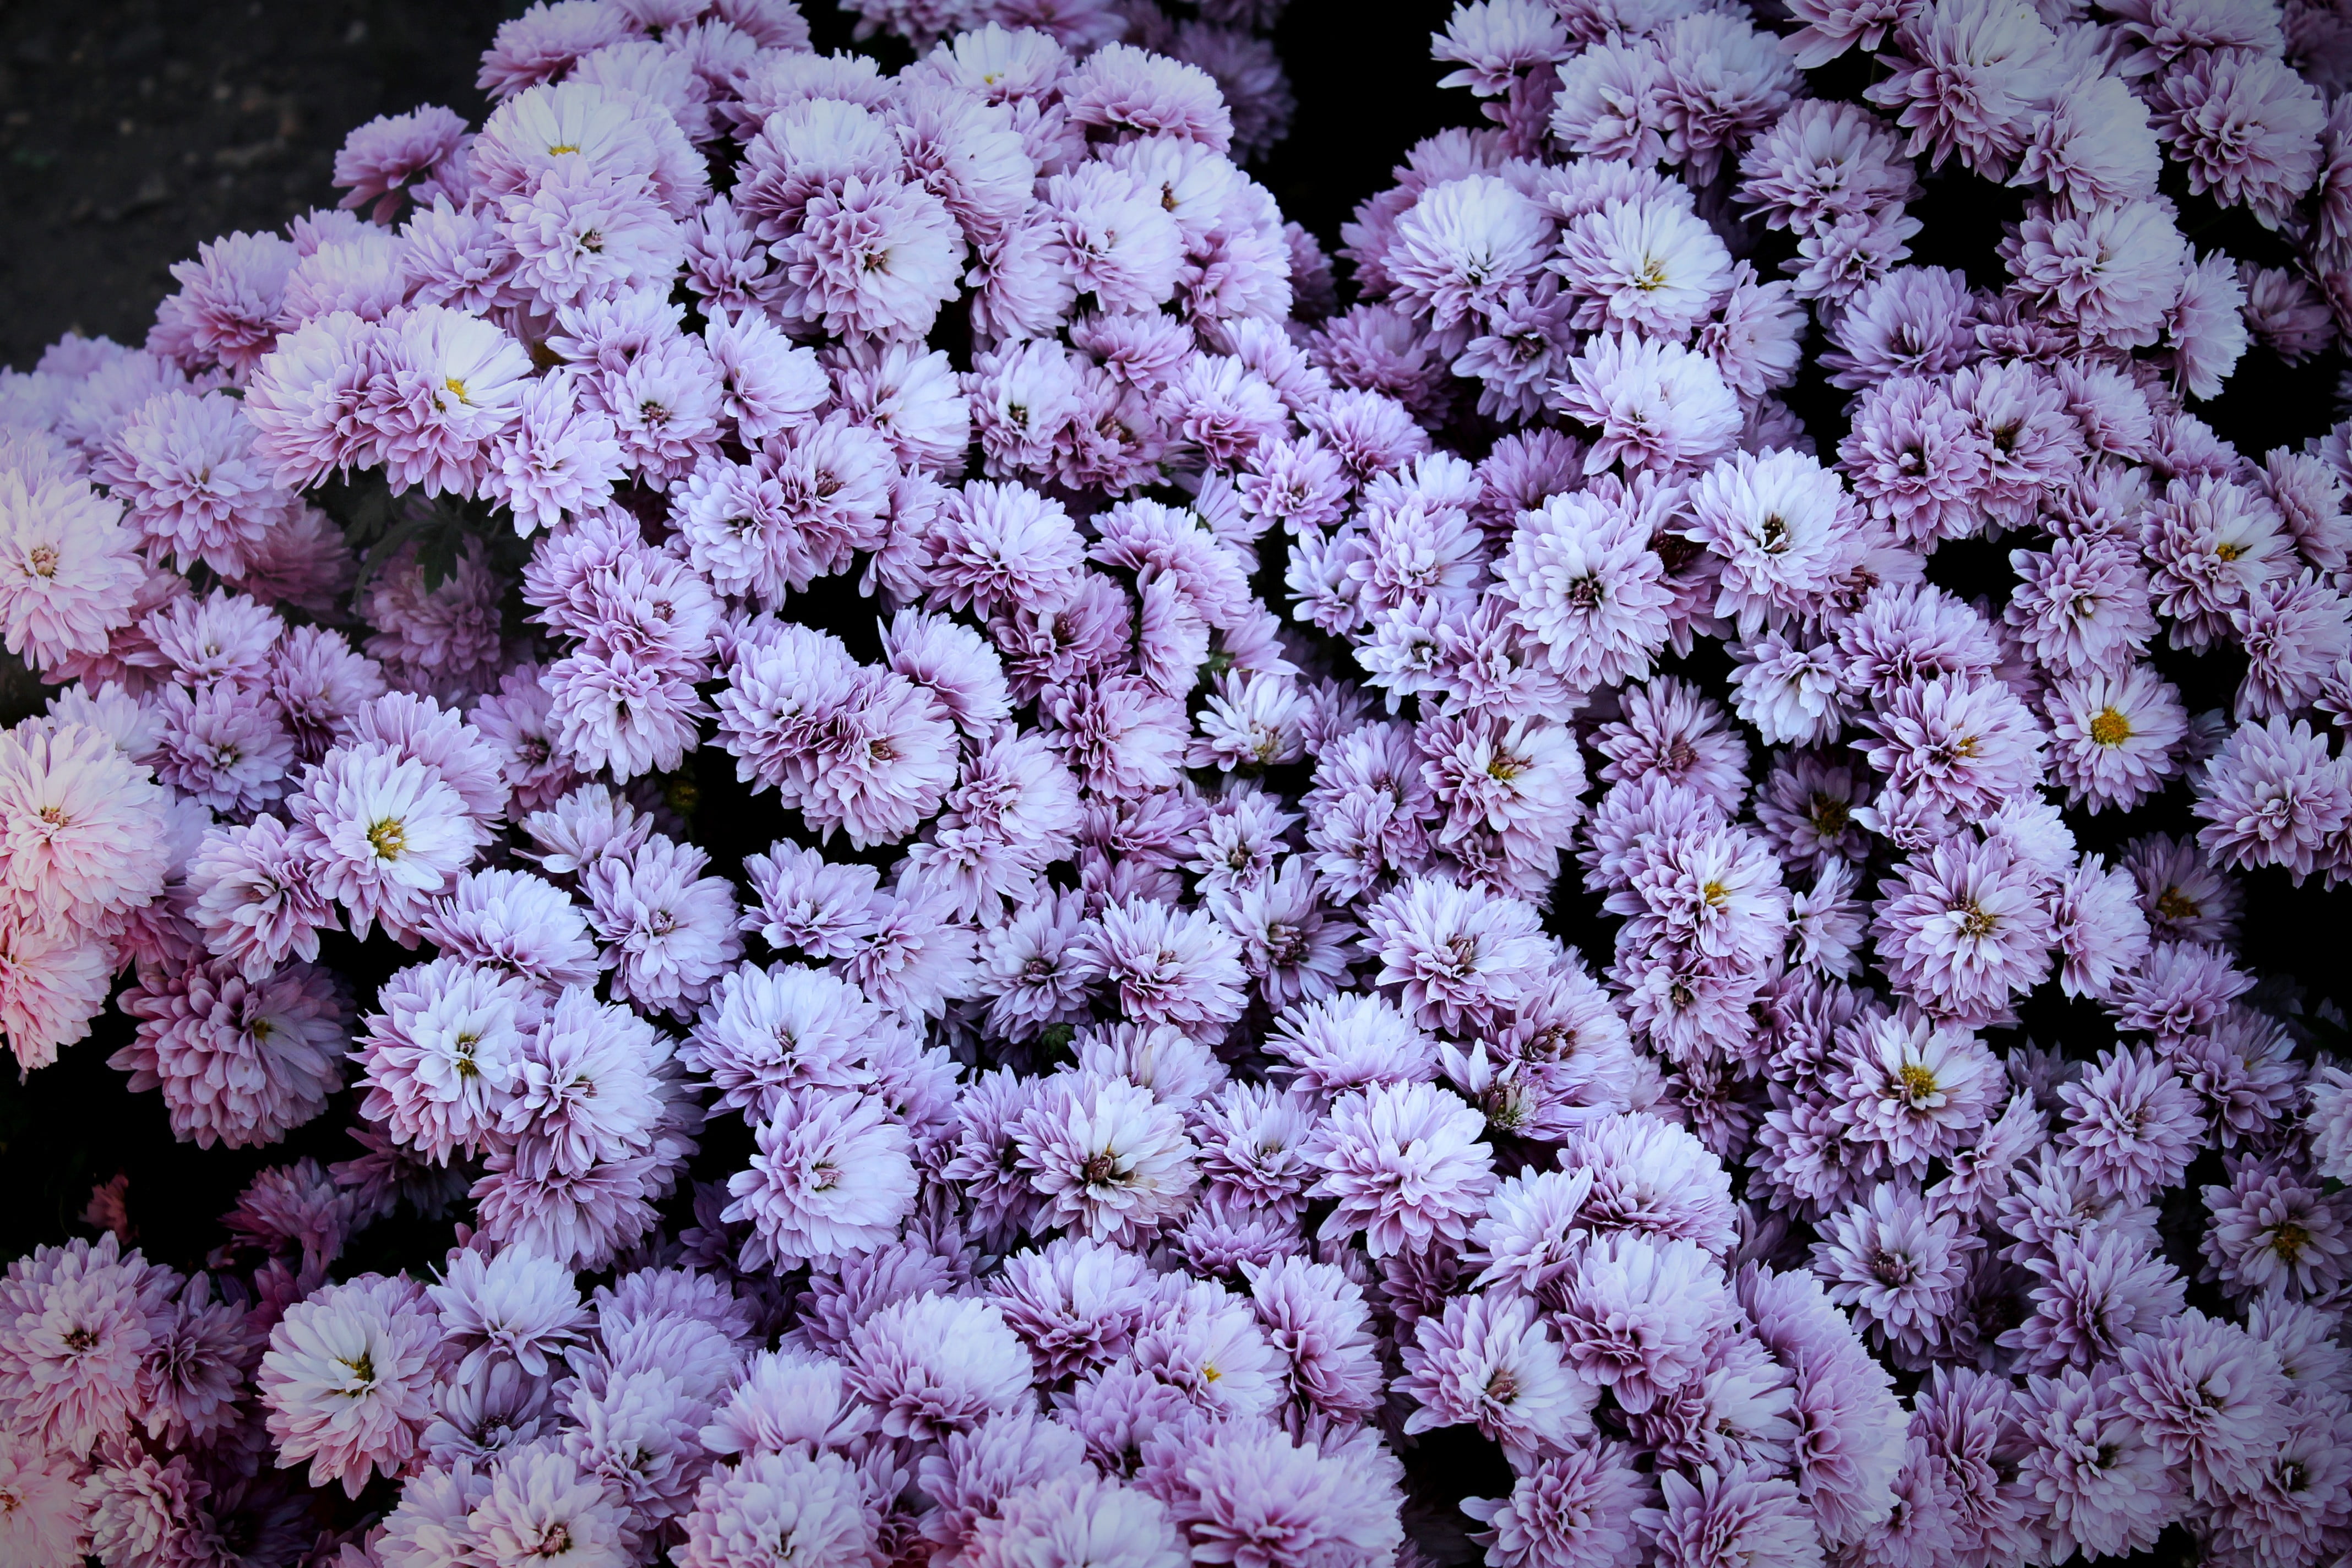 purple chrysanthemum flowers, spring, Russia, flowering plant